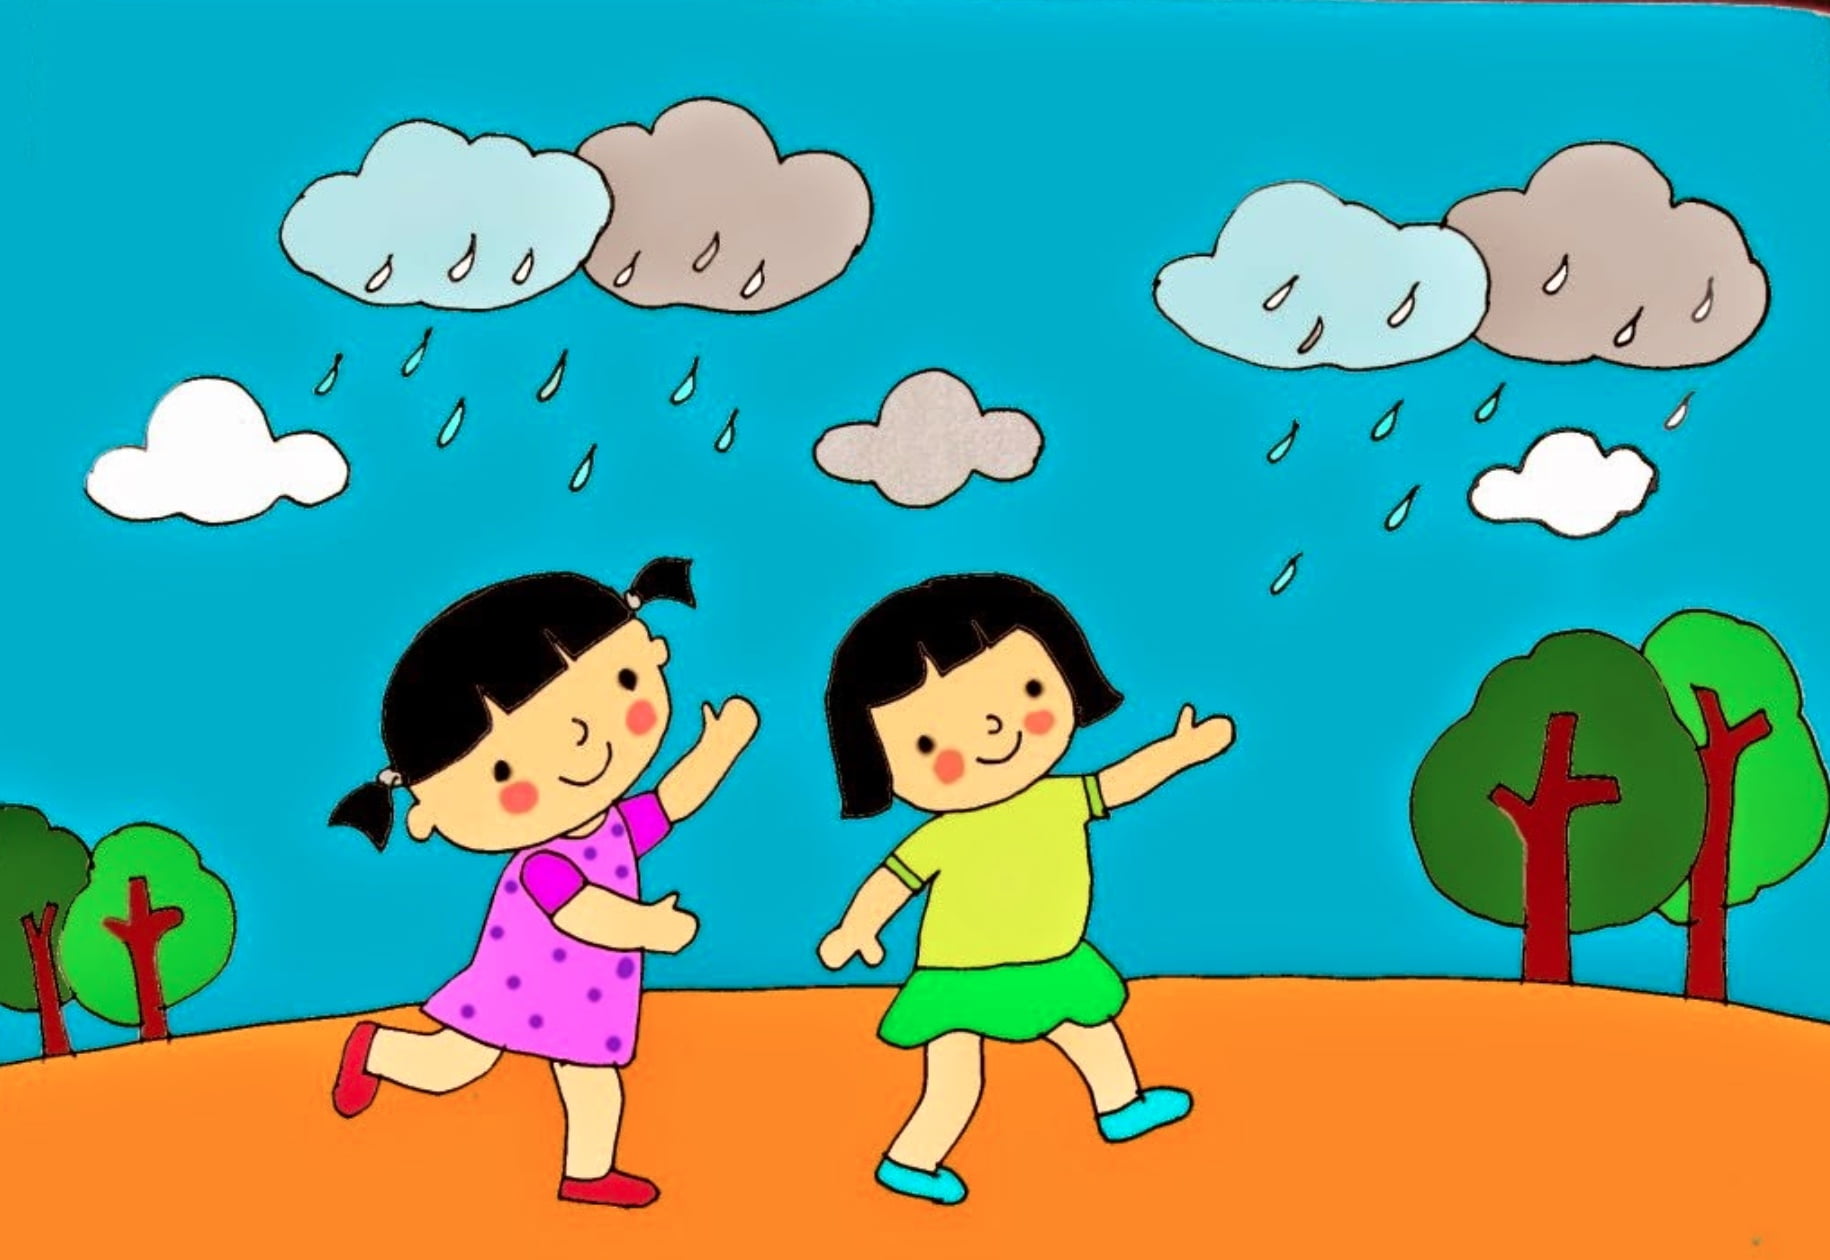 Đồng dao Lạy trời mưa xuống (Bài thơ Gọi mưa): Lạy trời mưa xuống